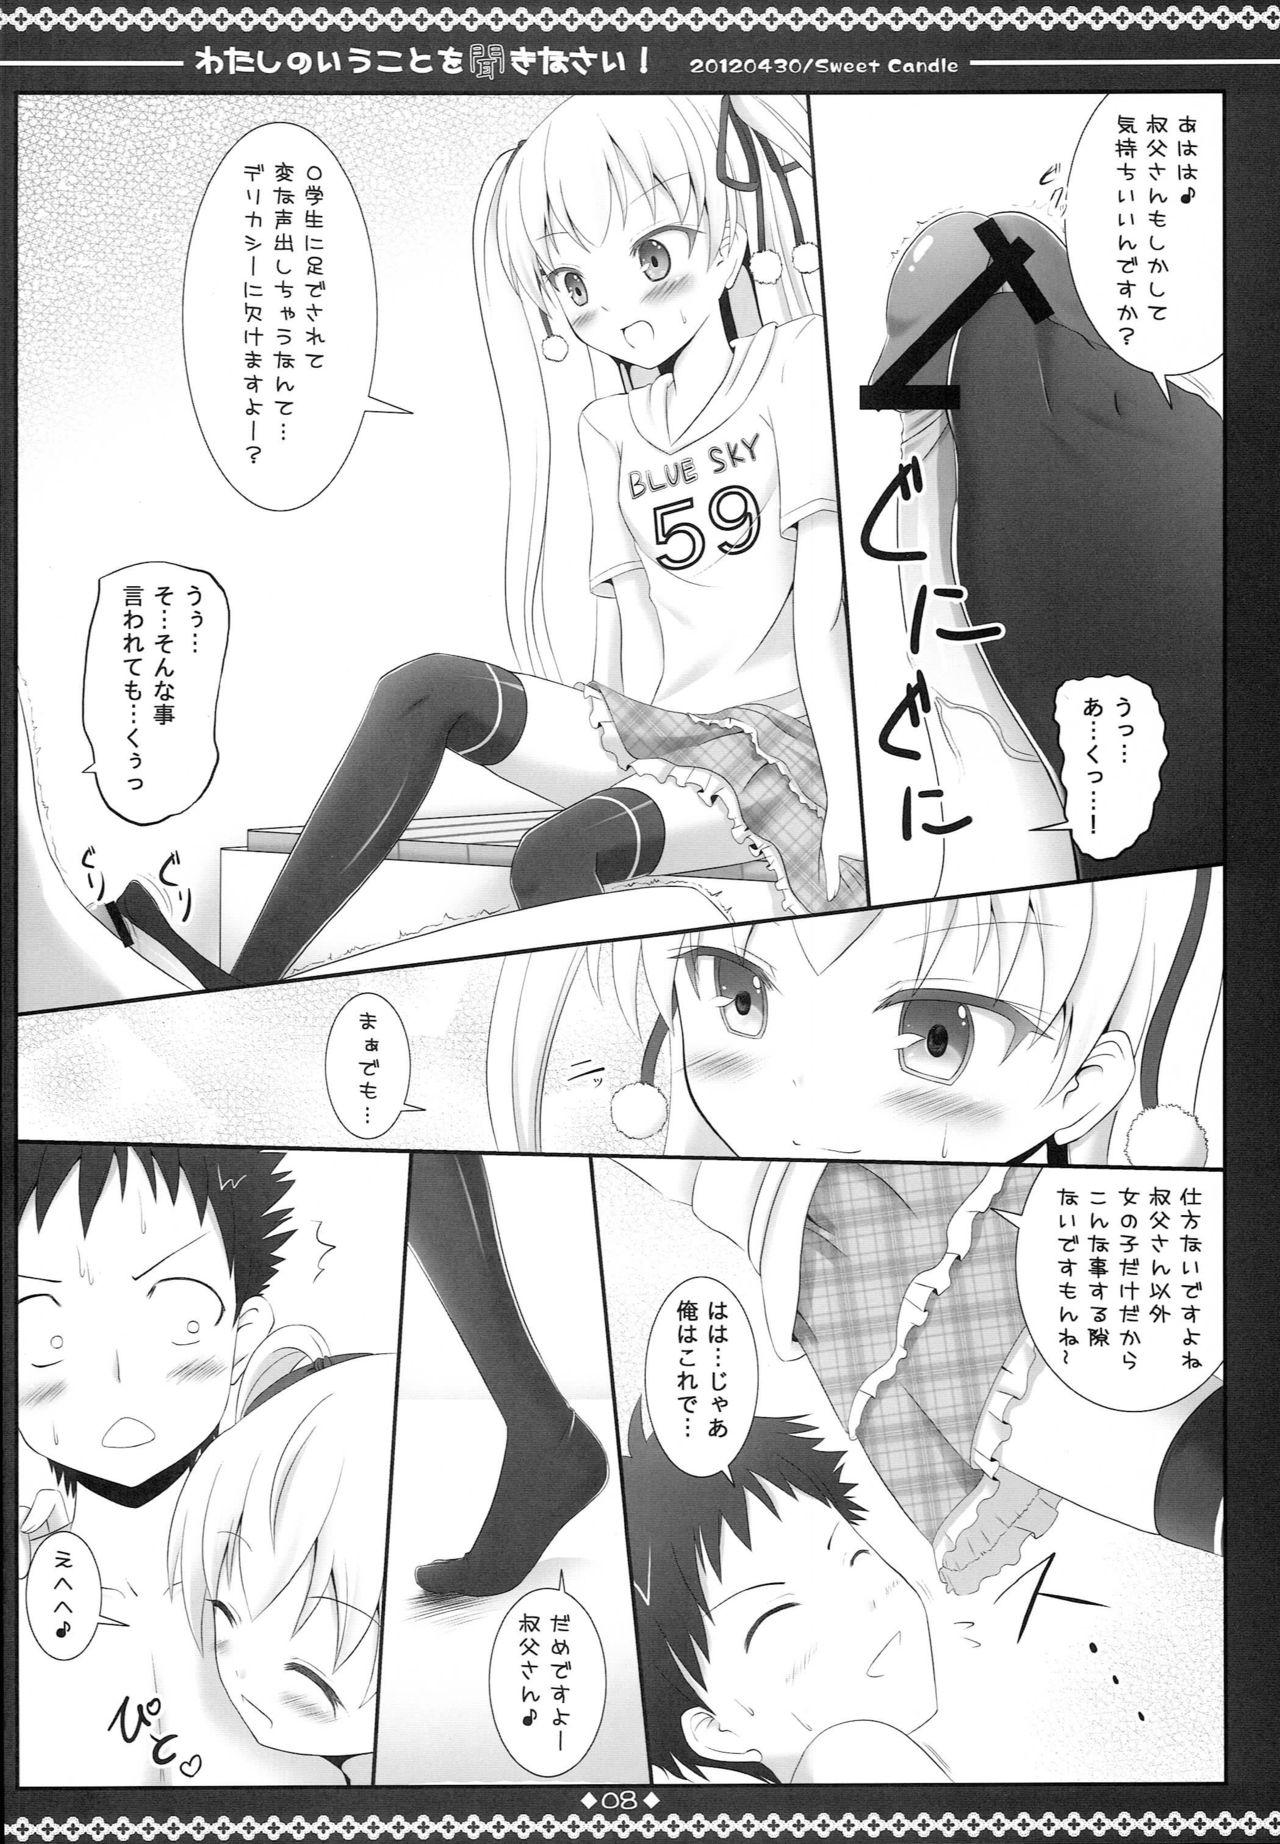 Brunettes Watashi no Iu Koto o Kikinasai! - Papa no iu koto wo kikinasai Highschool - Page 7